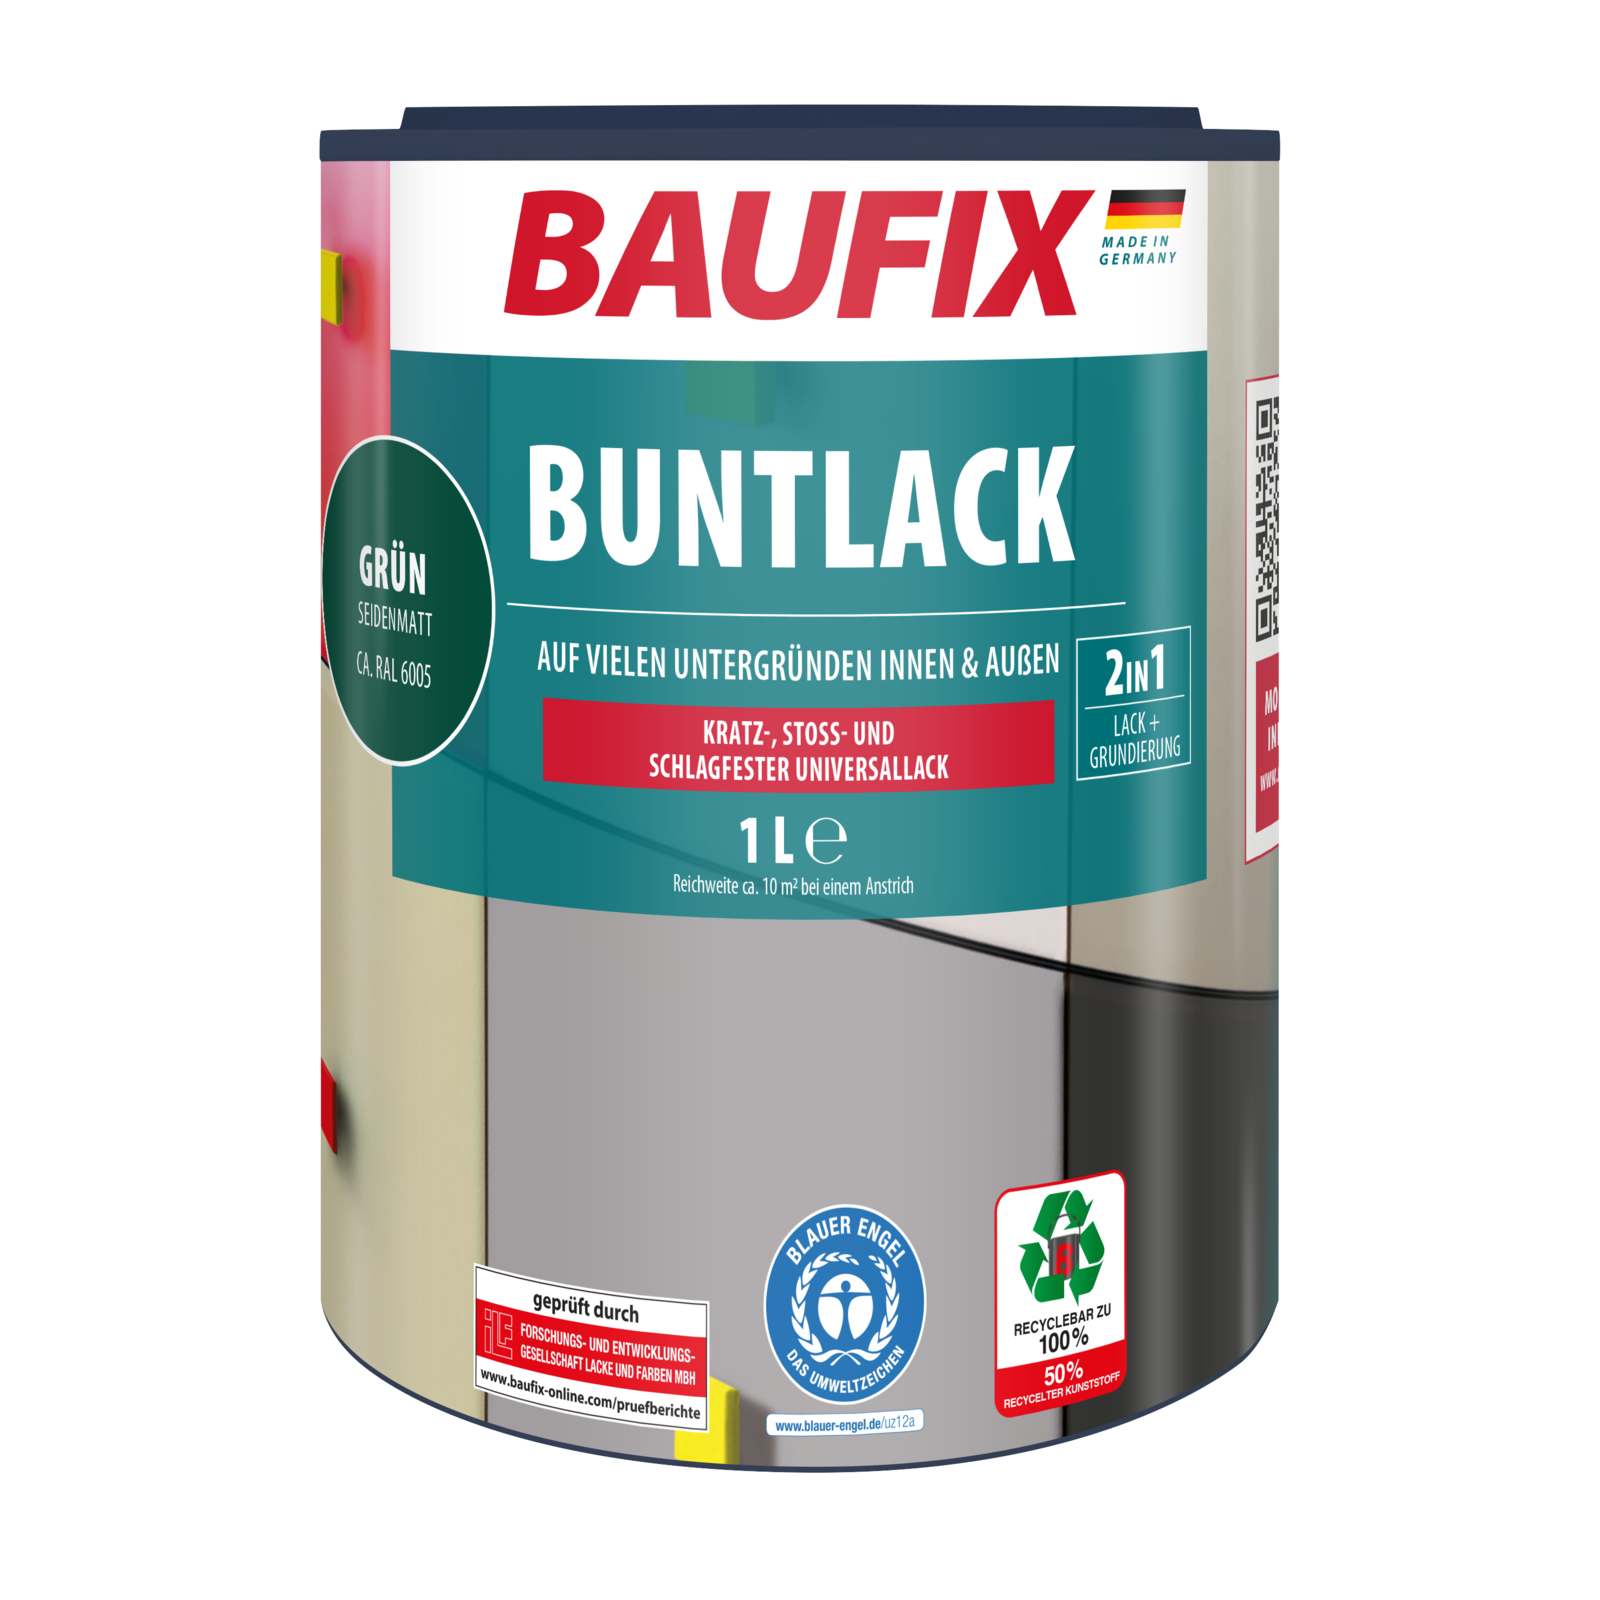 BAUFIX Buntlack seidenmatt grün | Norma24 | Versiegelung & Fleckenentferner